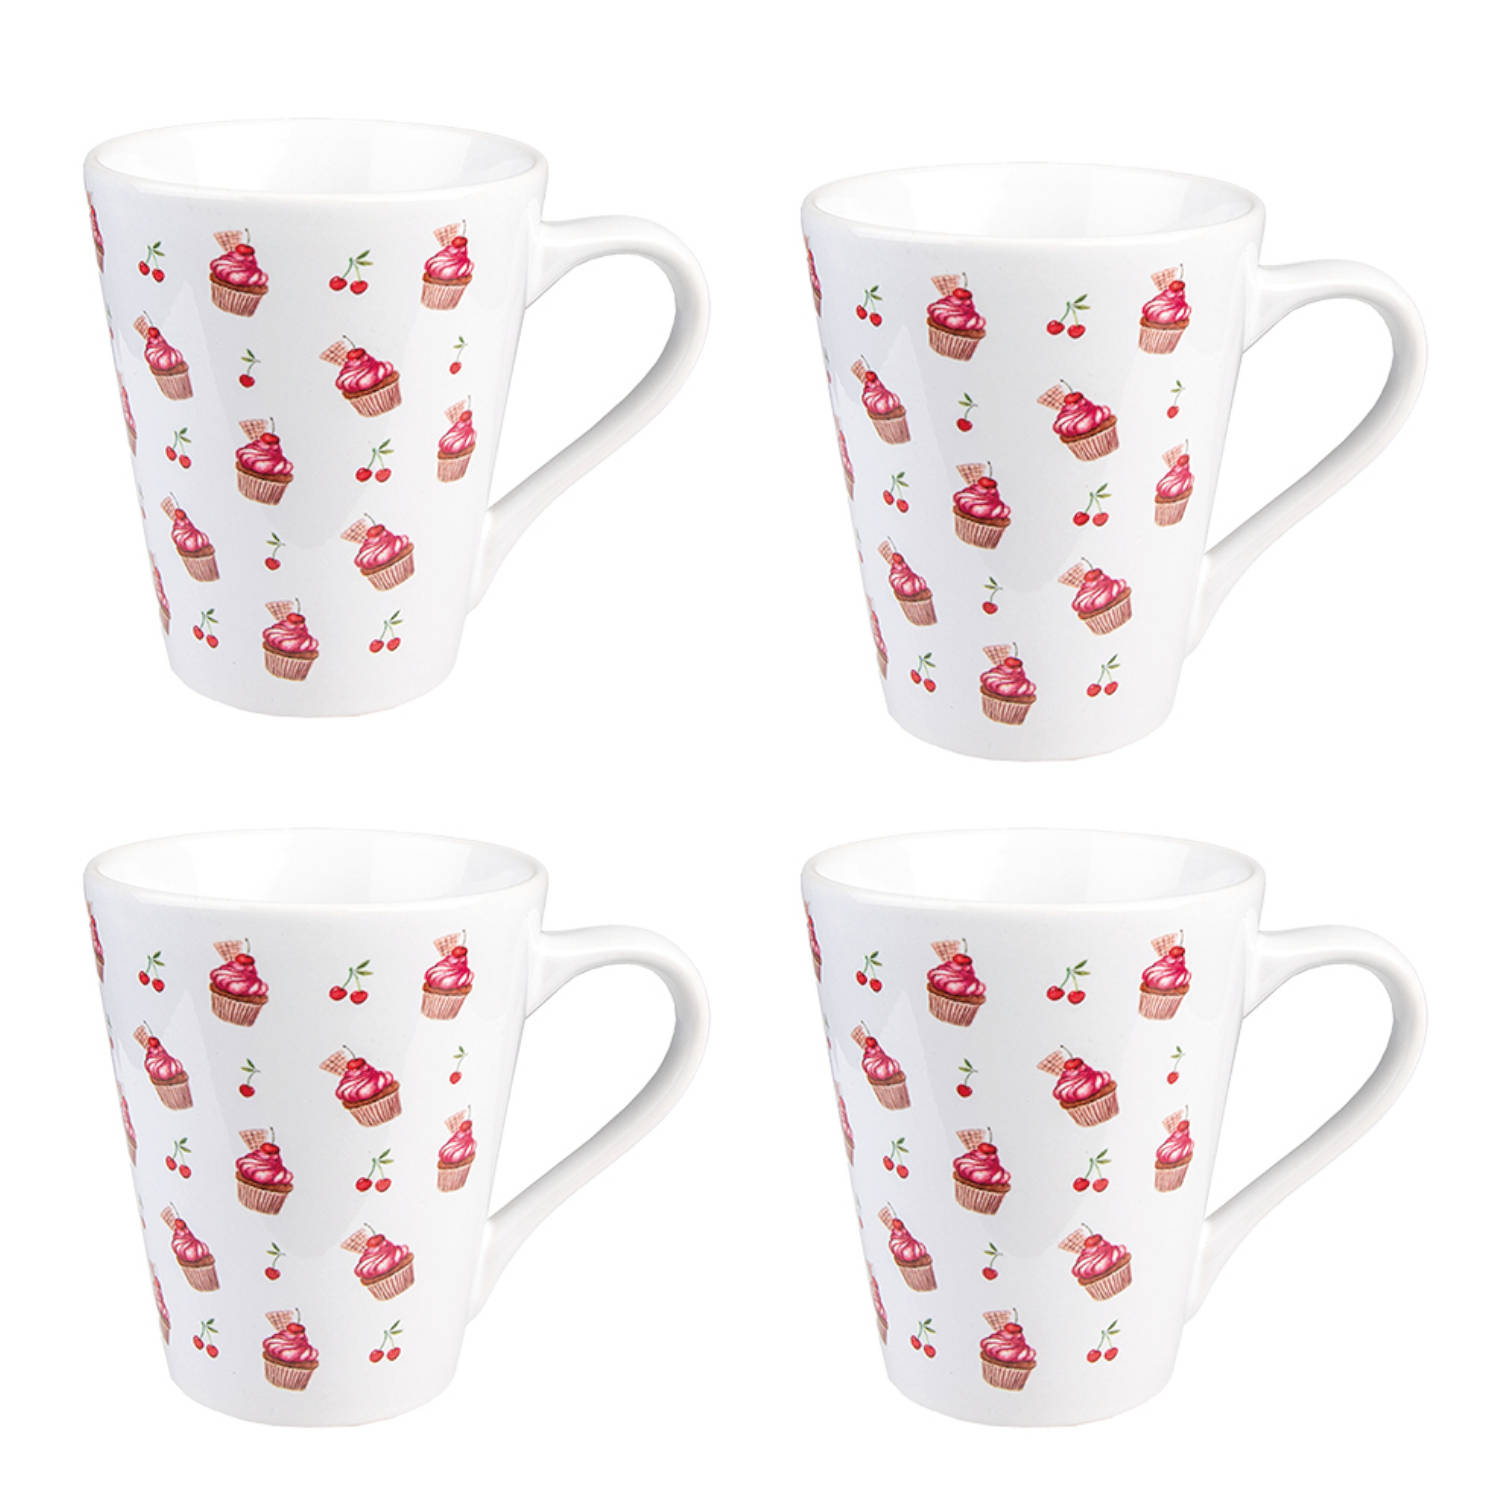 HAES DECO - Set van 4 Mokken - formaat 13x9x11 cm / 300 ml - kleuren Wit / Rood / Roze - Bedrukt Keramiek - Collectie: Cherry Cupcake - Mokkenset, Koffiemok, Koffiebeker